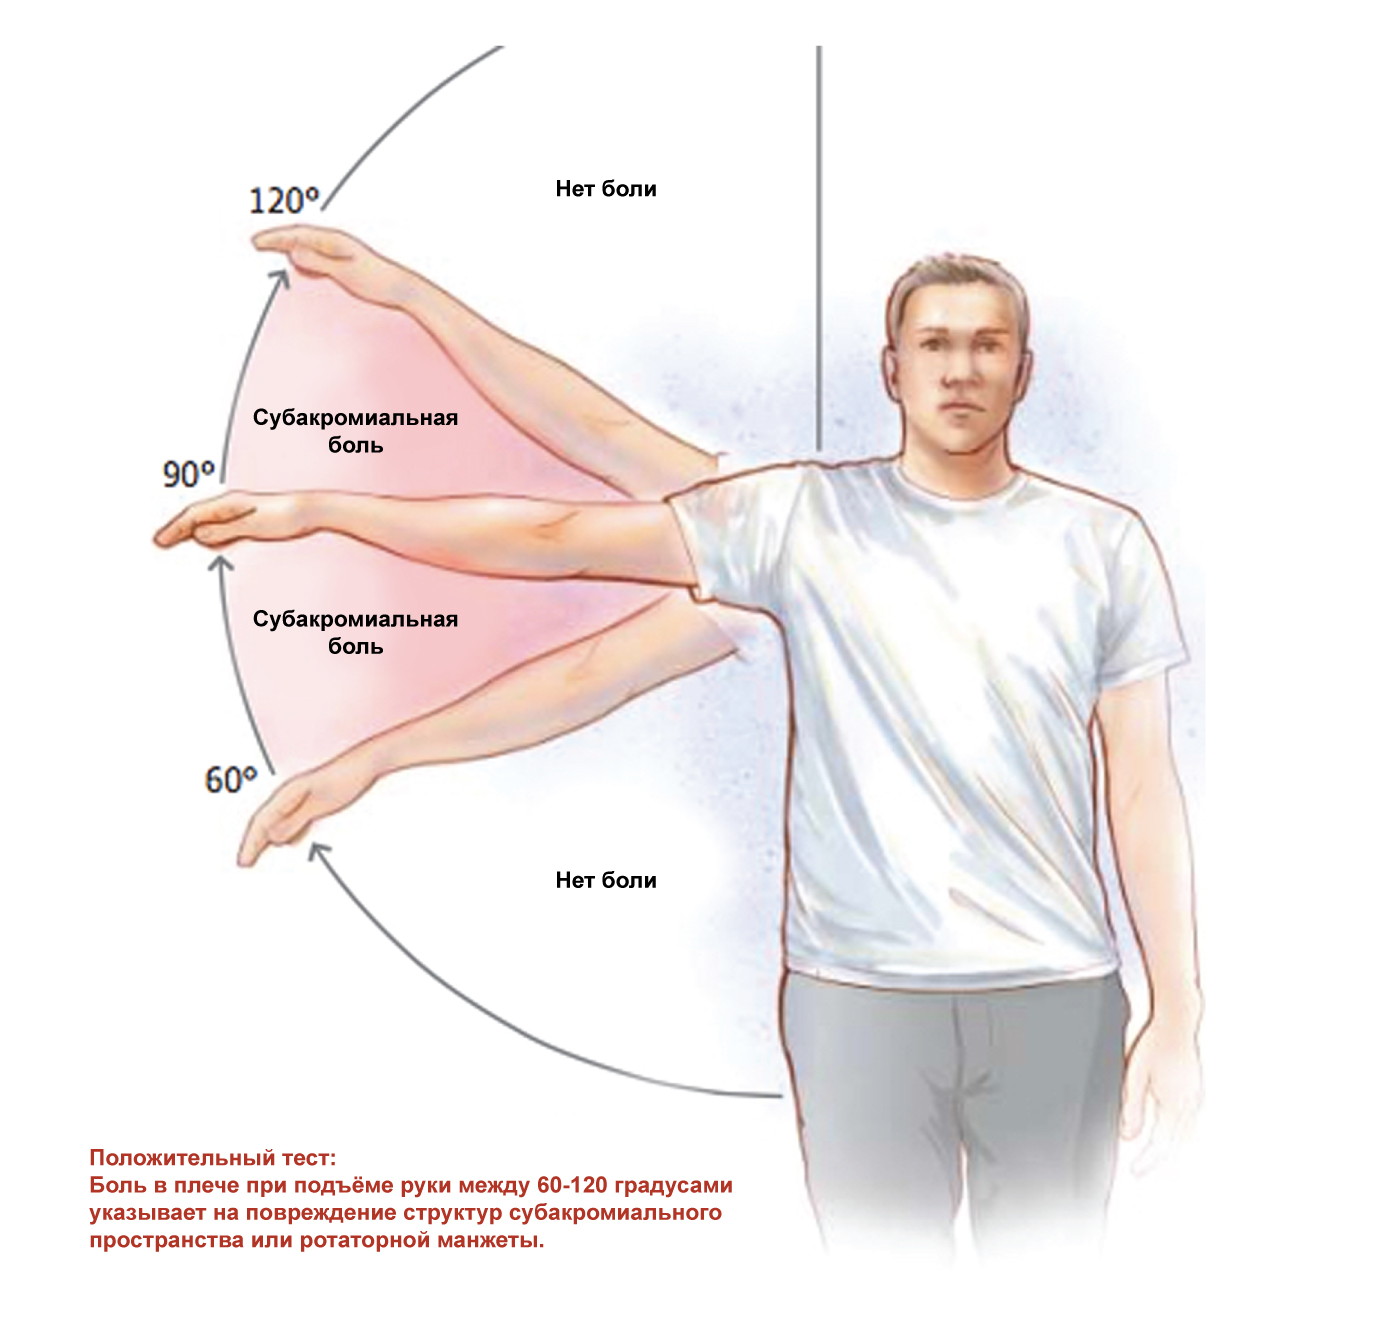 Болит левое плече у мужчины. Субакромиальный синдром плечевого сустава ЛФК. ЛФК при импиджмент синдром правого плечевого сустава. Субакромиальный болевой синдром. Лечебная физкультура при импинджмент синдроме плечевого сустава.